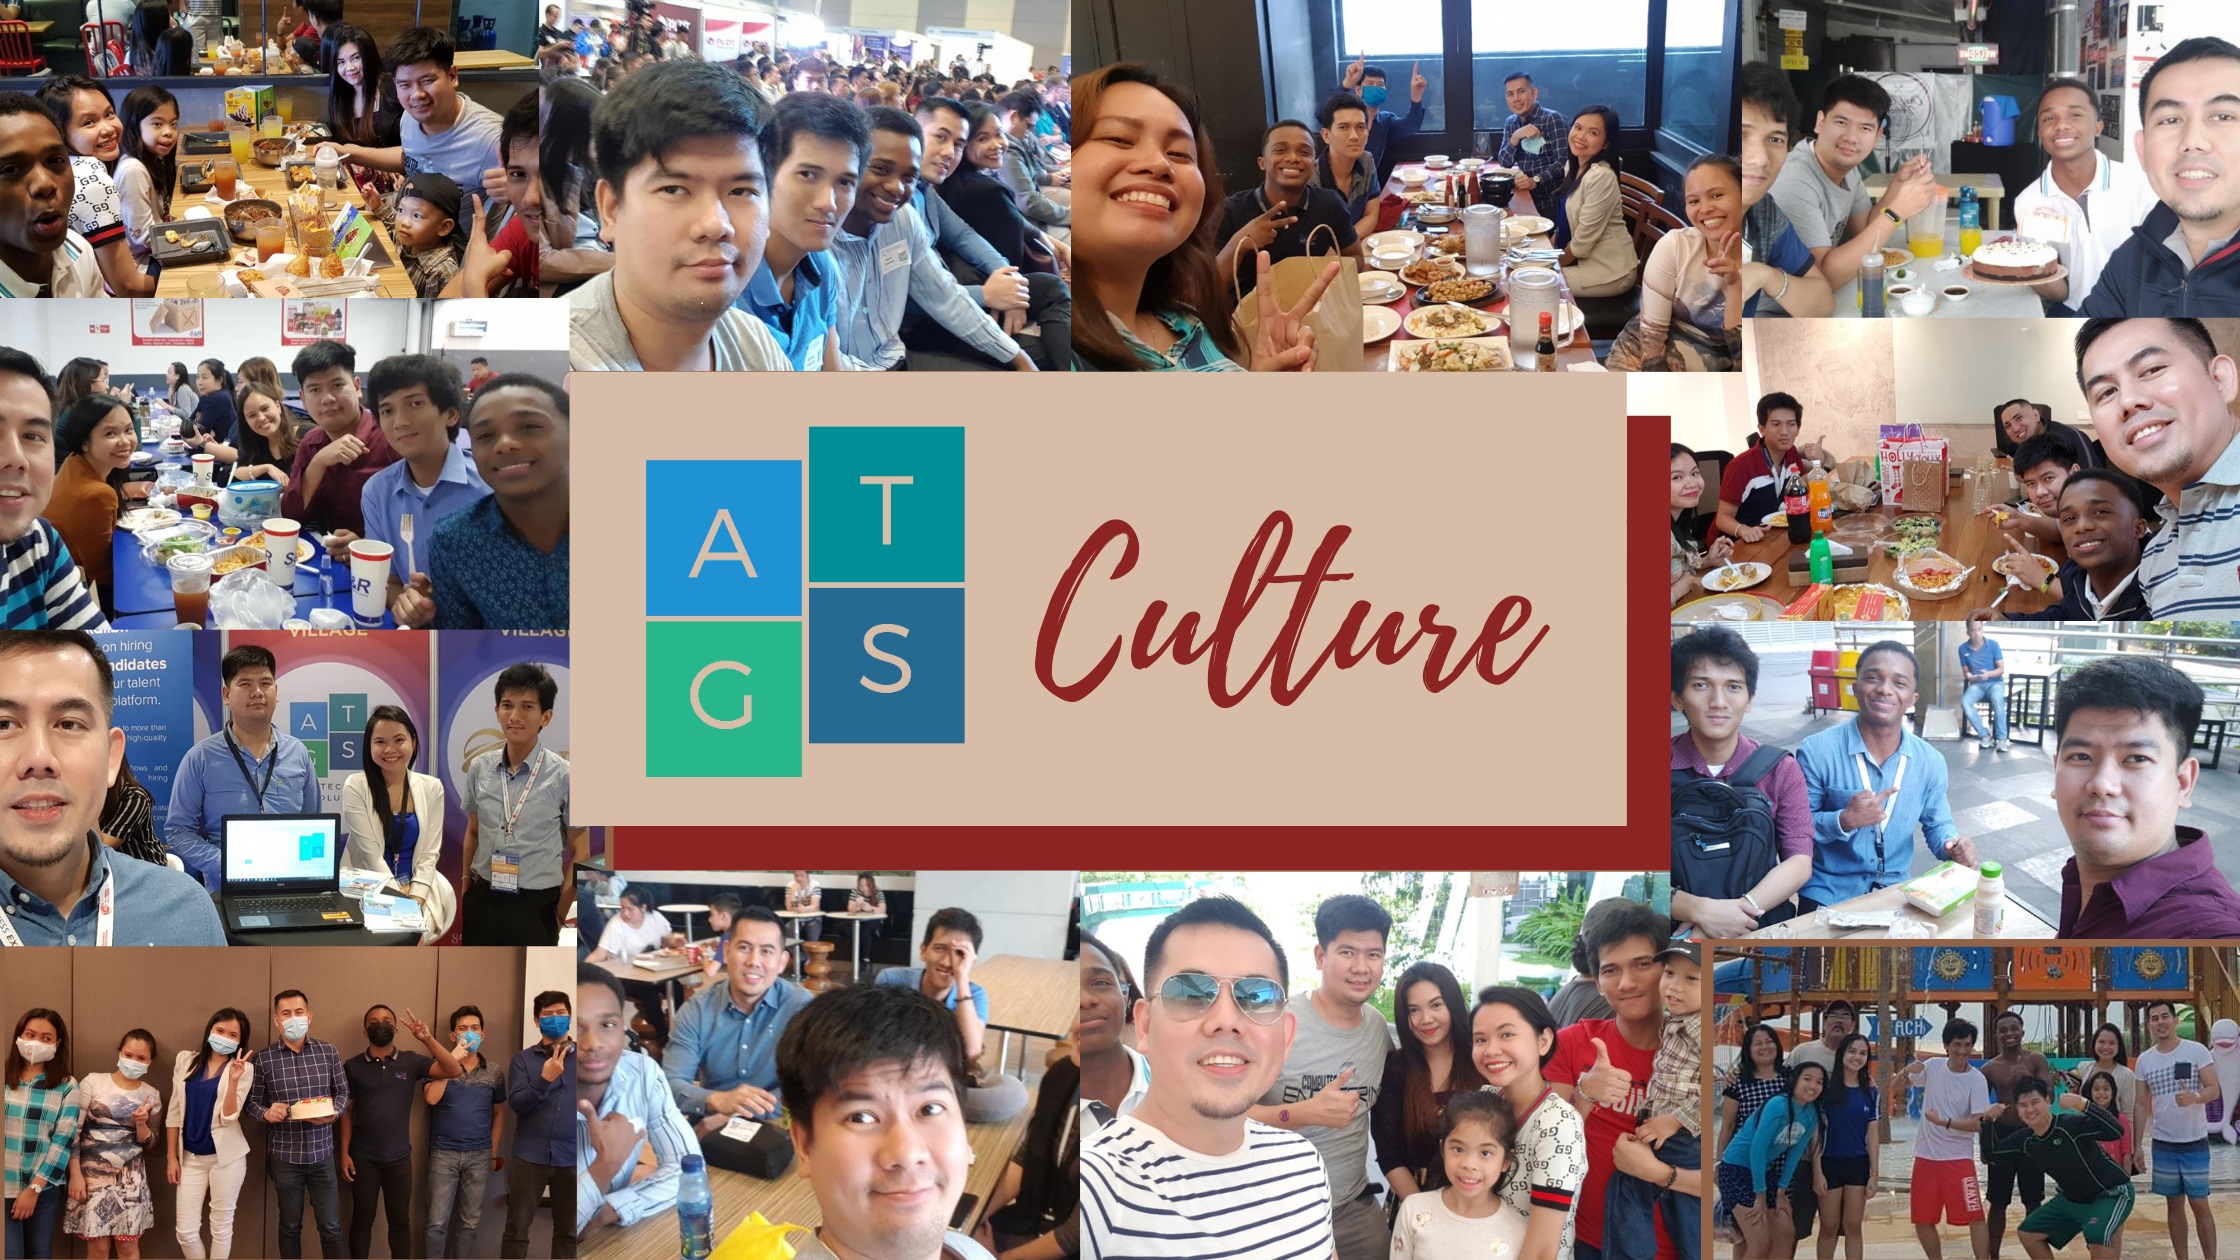 ATGS Culture